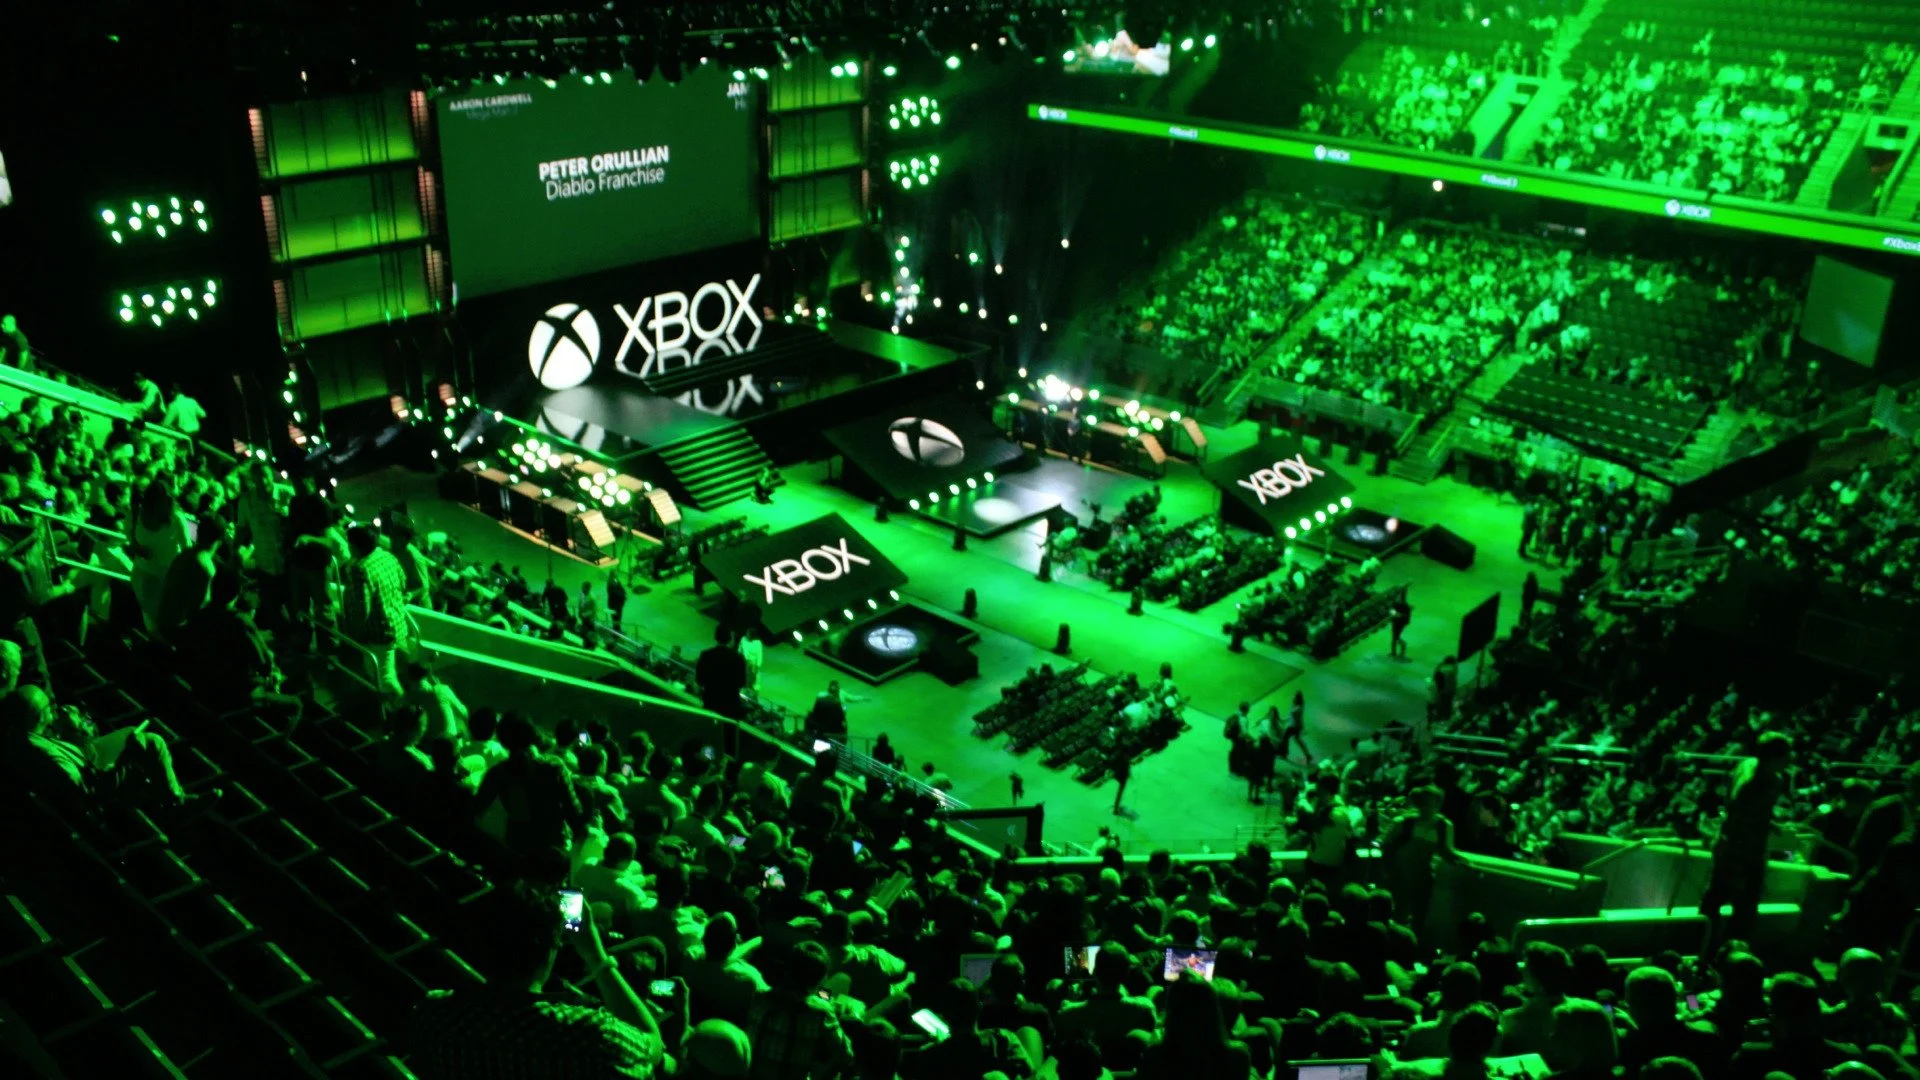 Пресс-конференция компании Microsoft в рамках выставки E3 2015 пройдет 15 июня в 19:30 (московское время). Многие считают, что именно на этой конференции решится будущее Xbox One. Редакция «Канобу» обсуждает, чего она ждет от Microsoft. А чего ждете вы?